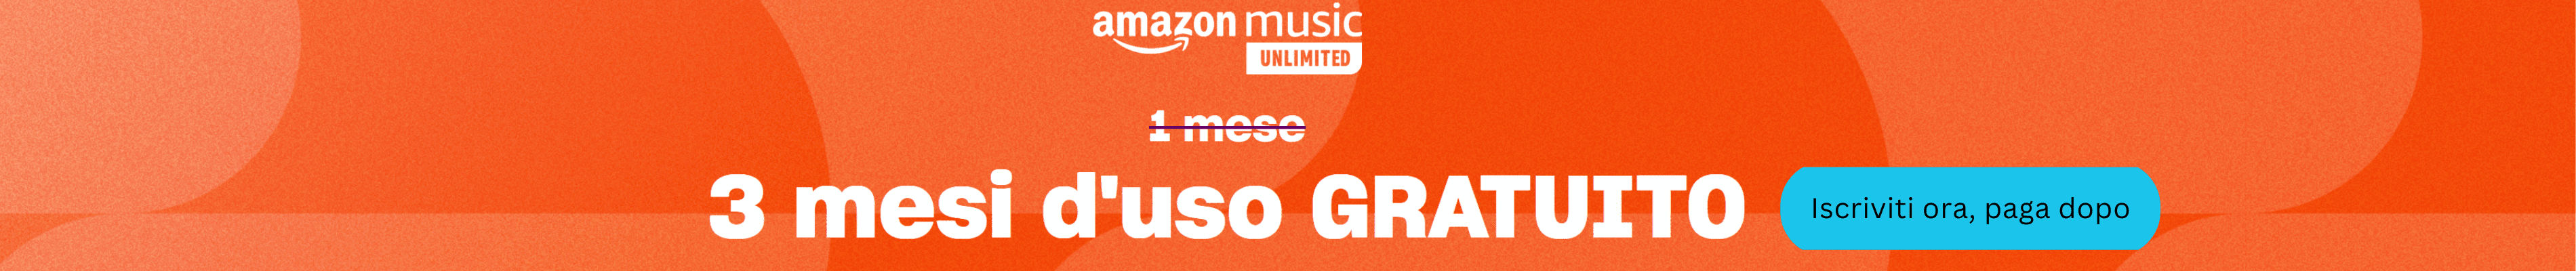 Amazon Unlimited Music gratuito per 3 mesi con lacorea.it